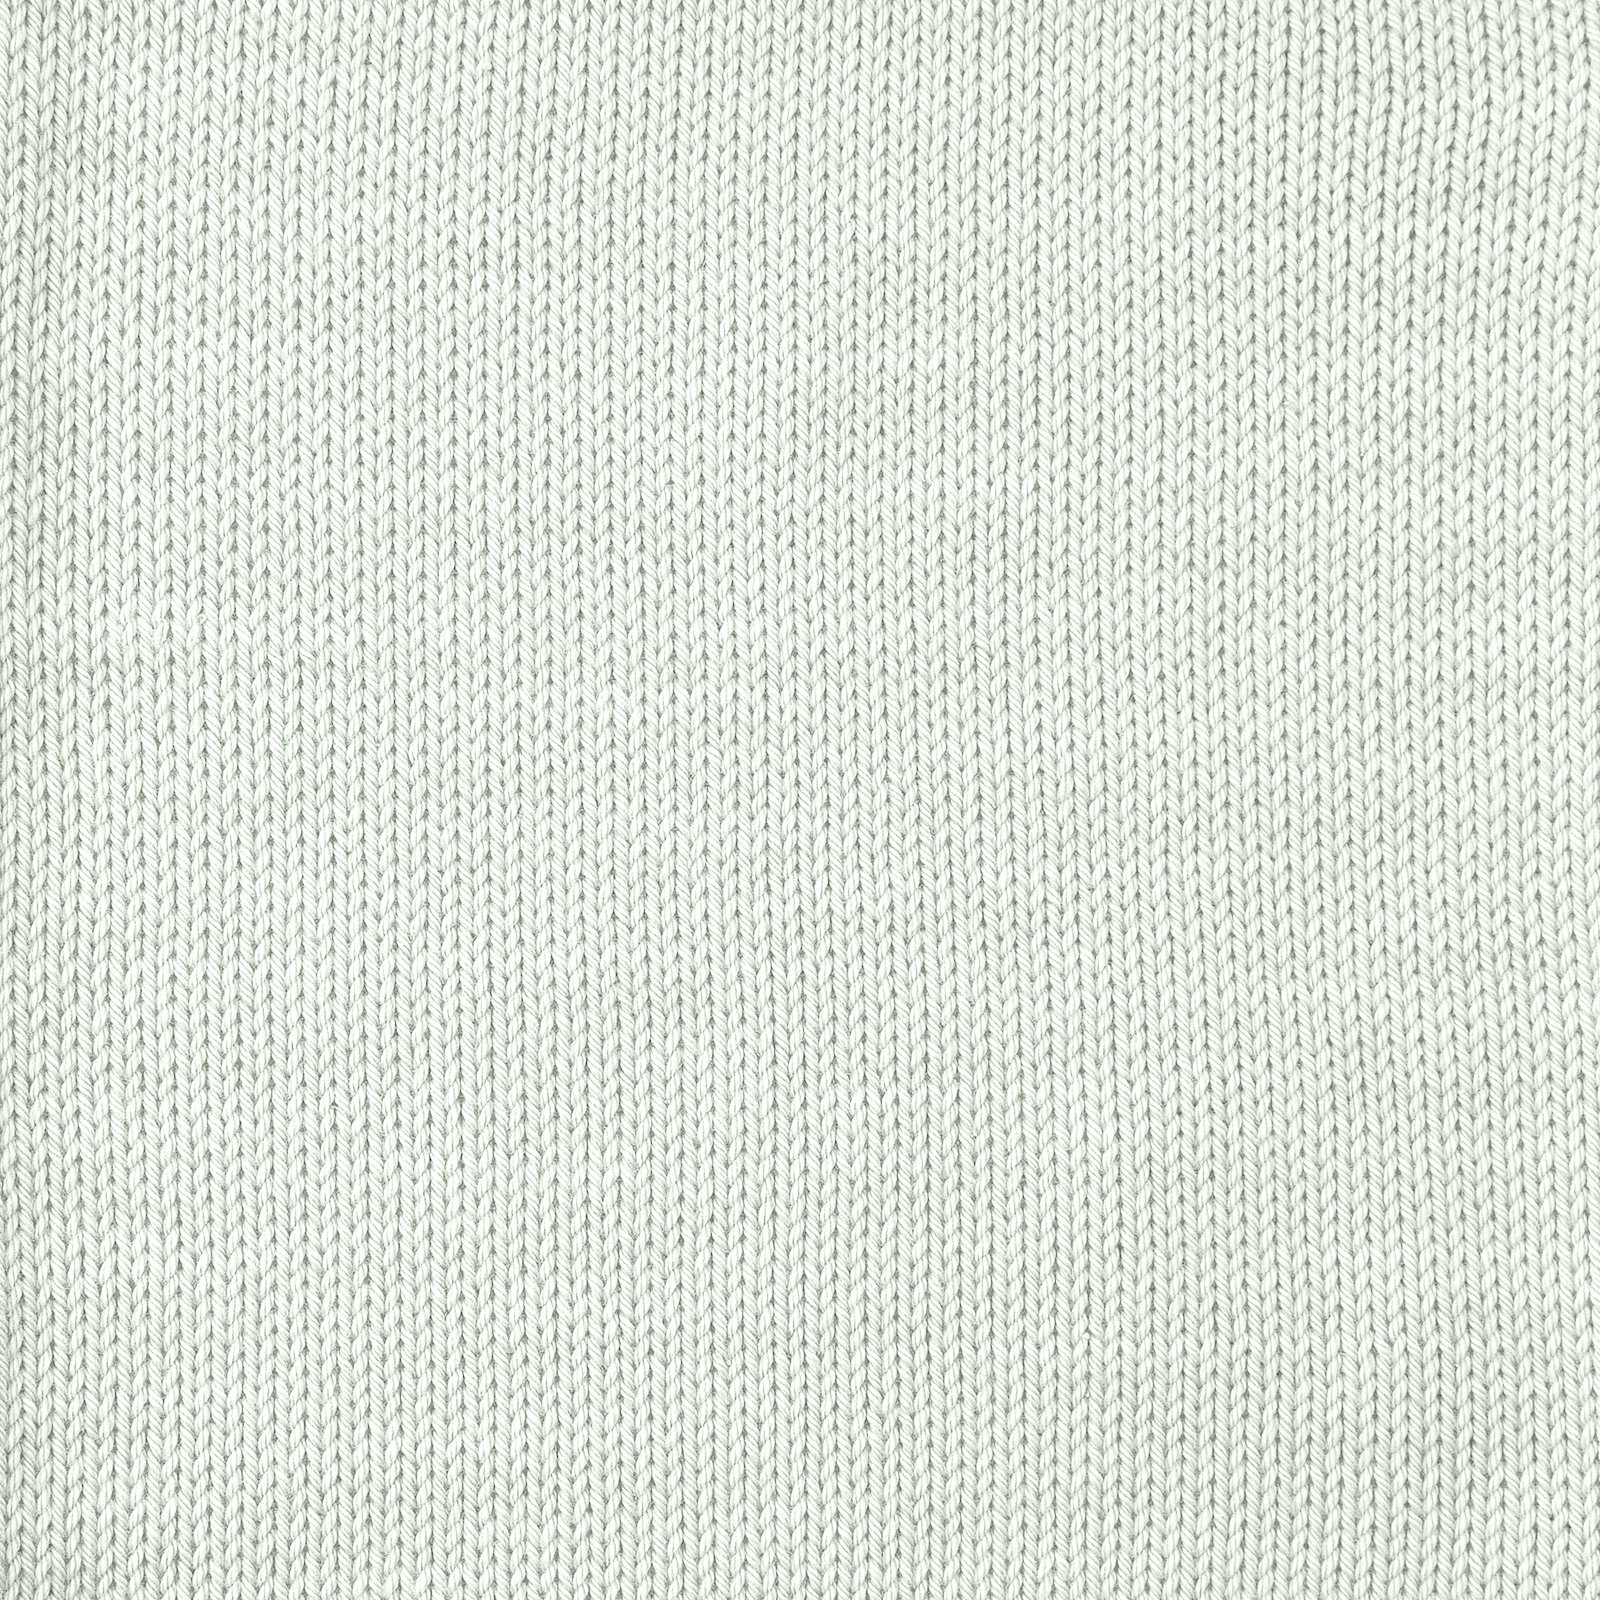 FRAYA, 100% cotton yarn "Colourful", pale green 90060086_sskit